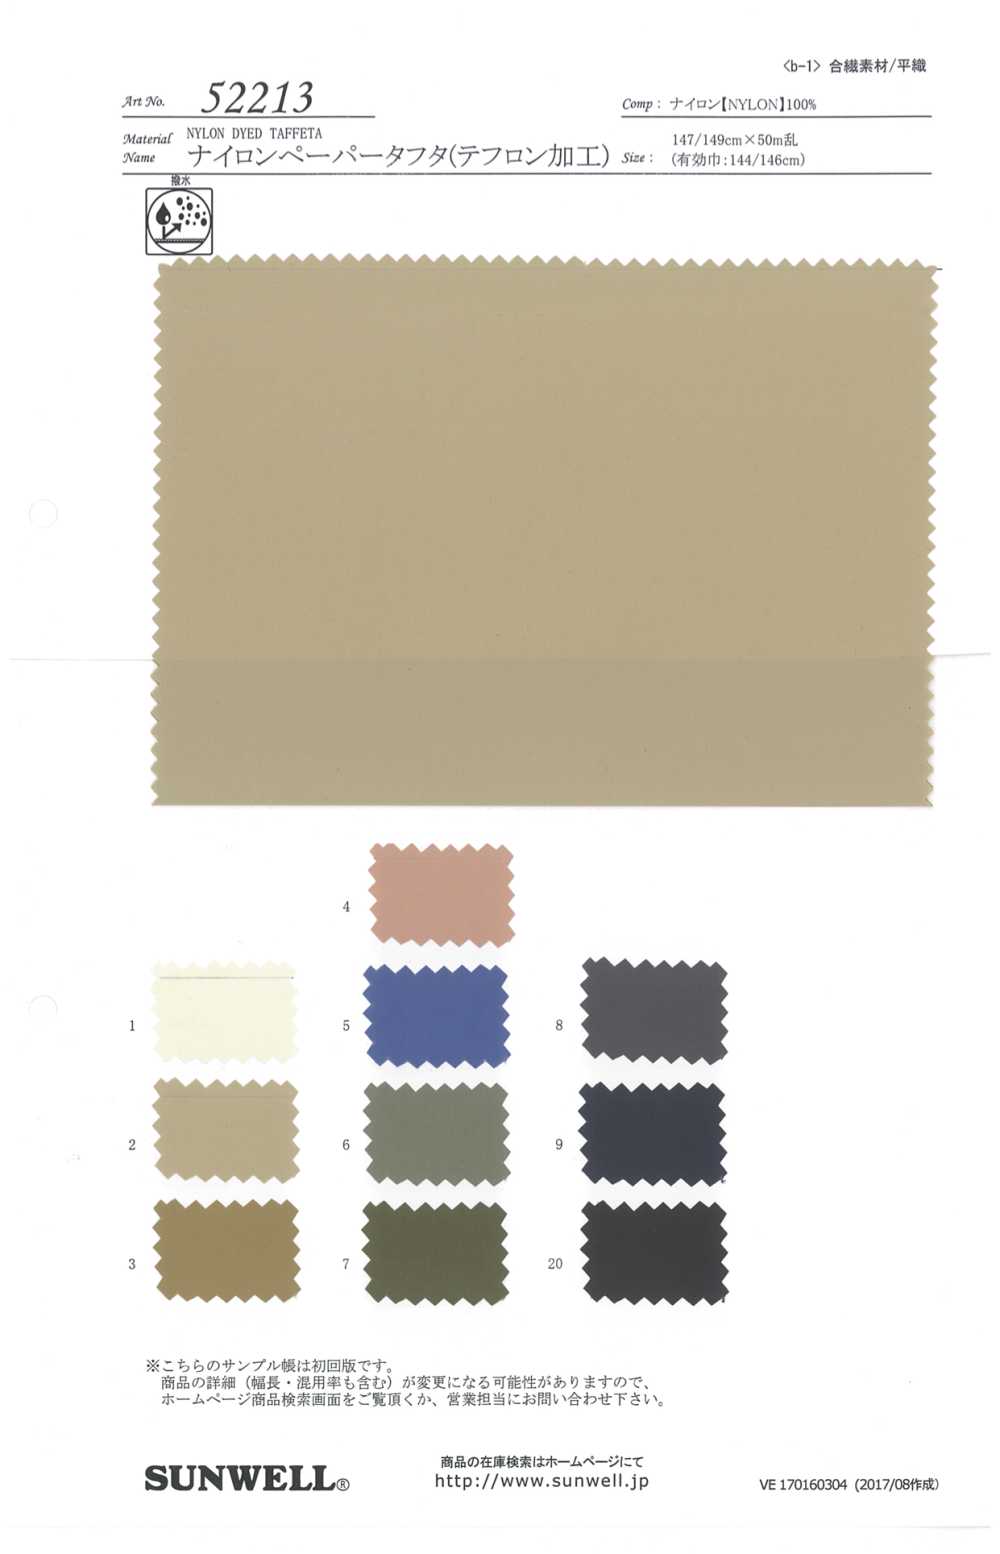 52213 [OUTLET] Nylon-Papier-Taft (Teflon-Verarbeitung)[Textilgewebe] SUNWELL